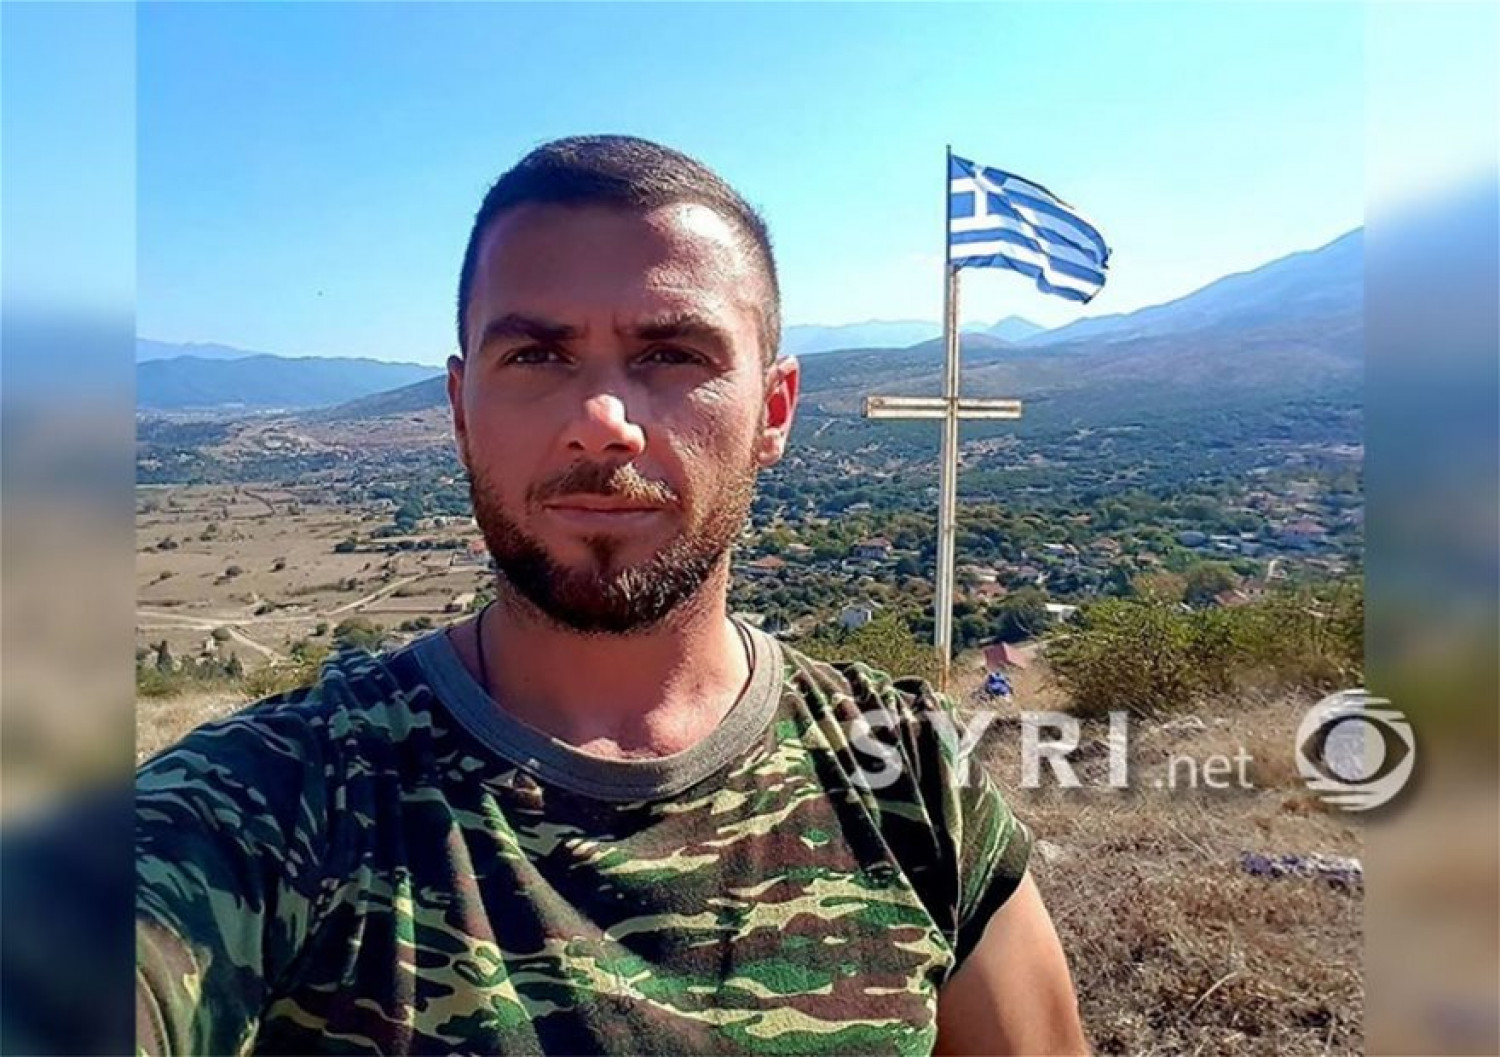 Αστυνομικοί σκότωσαν Έλληνα ομογενή επειδή ύψωσε ελληνική σημαία στο Αργυρόκαστρο - LIVE οι εξελίξεις - ΦΩΤΟ